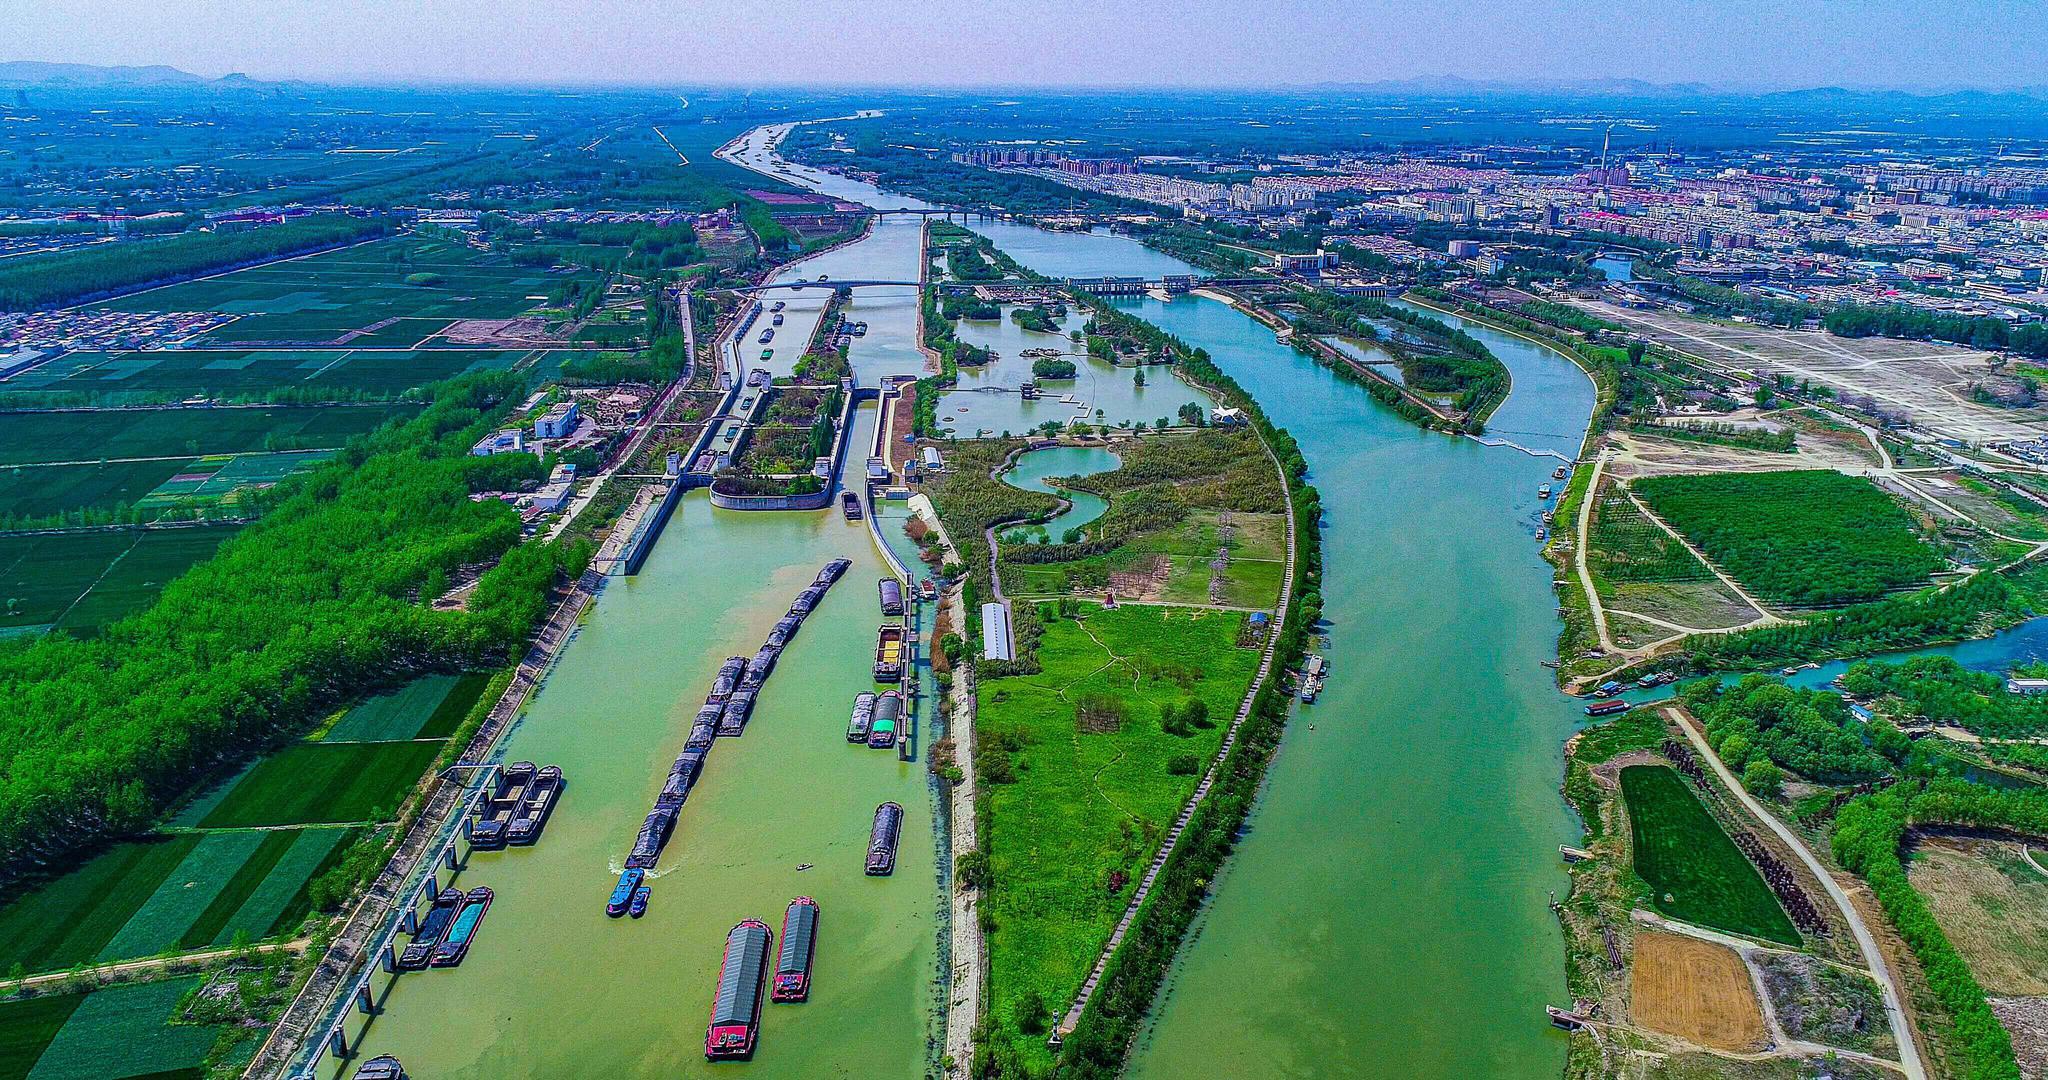 京杭大运河山东段城市图片